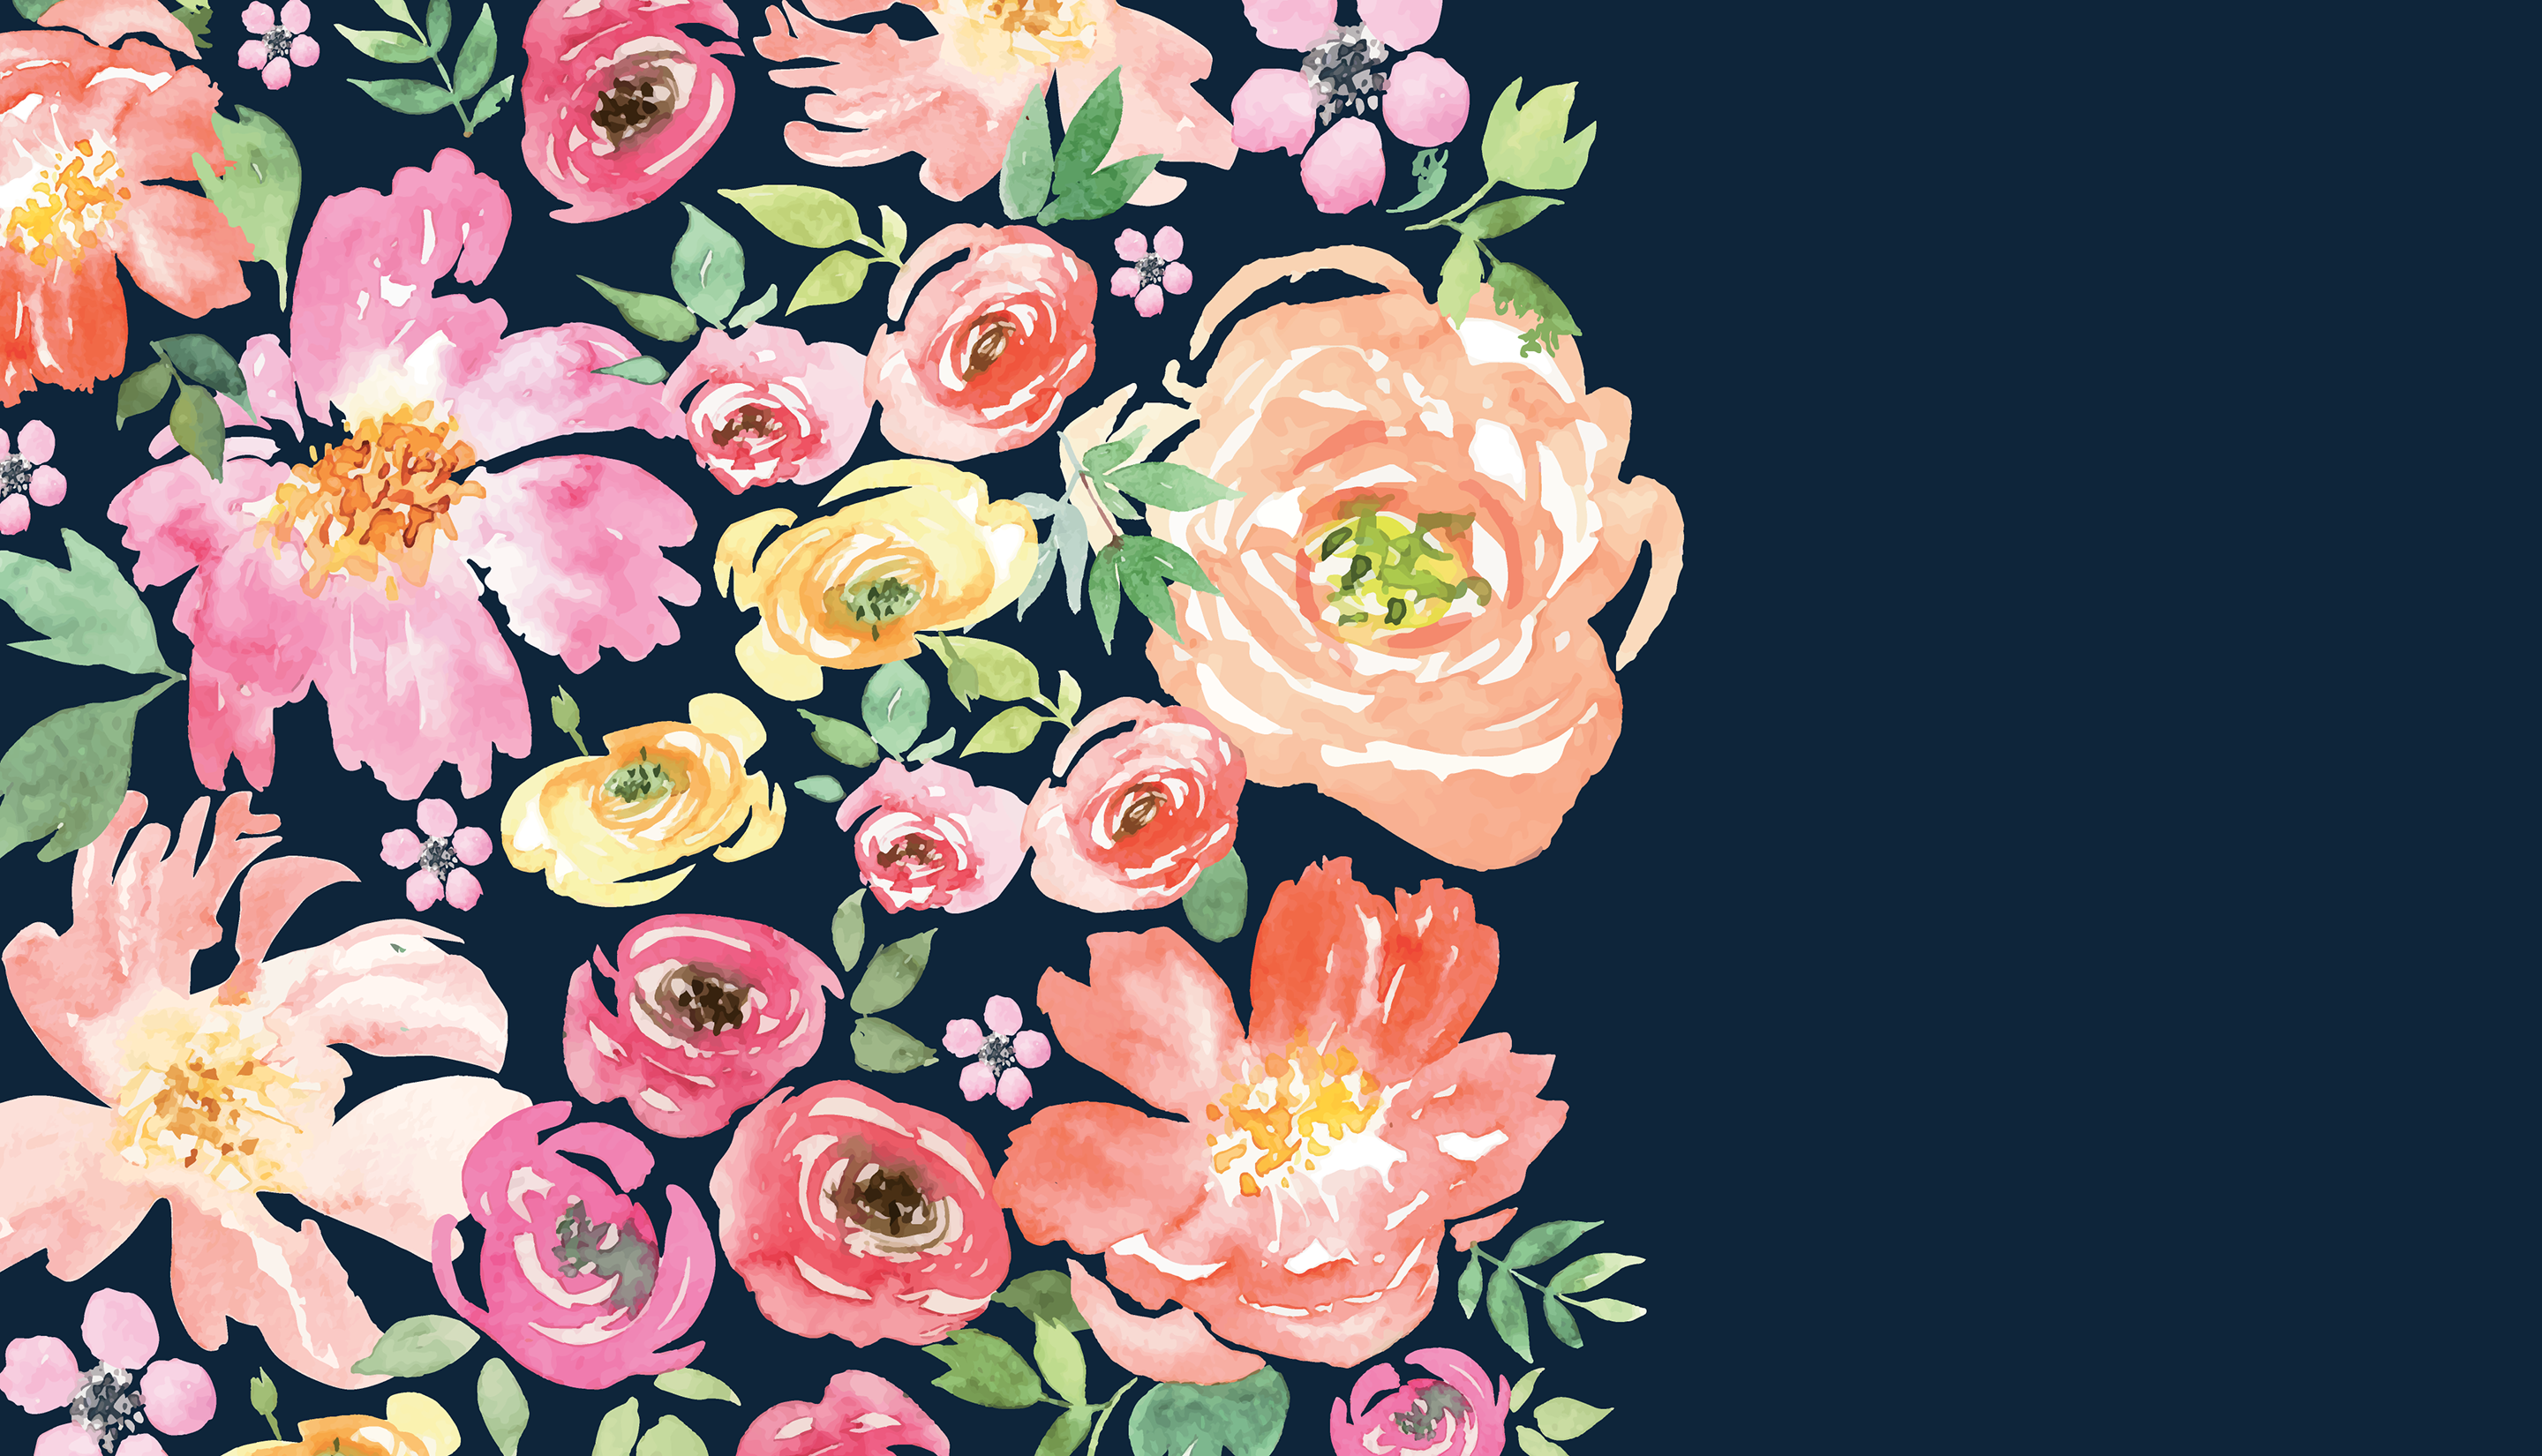 sfondo del desktop floreale,fiore,rosa,rose da giardino,rosa,disegno floreale